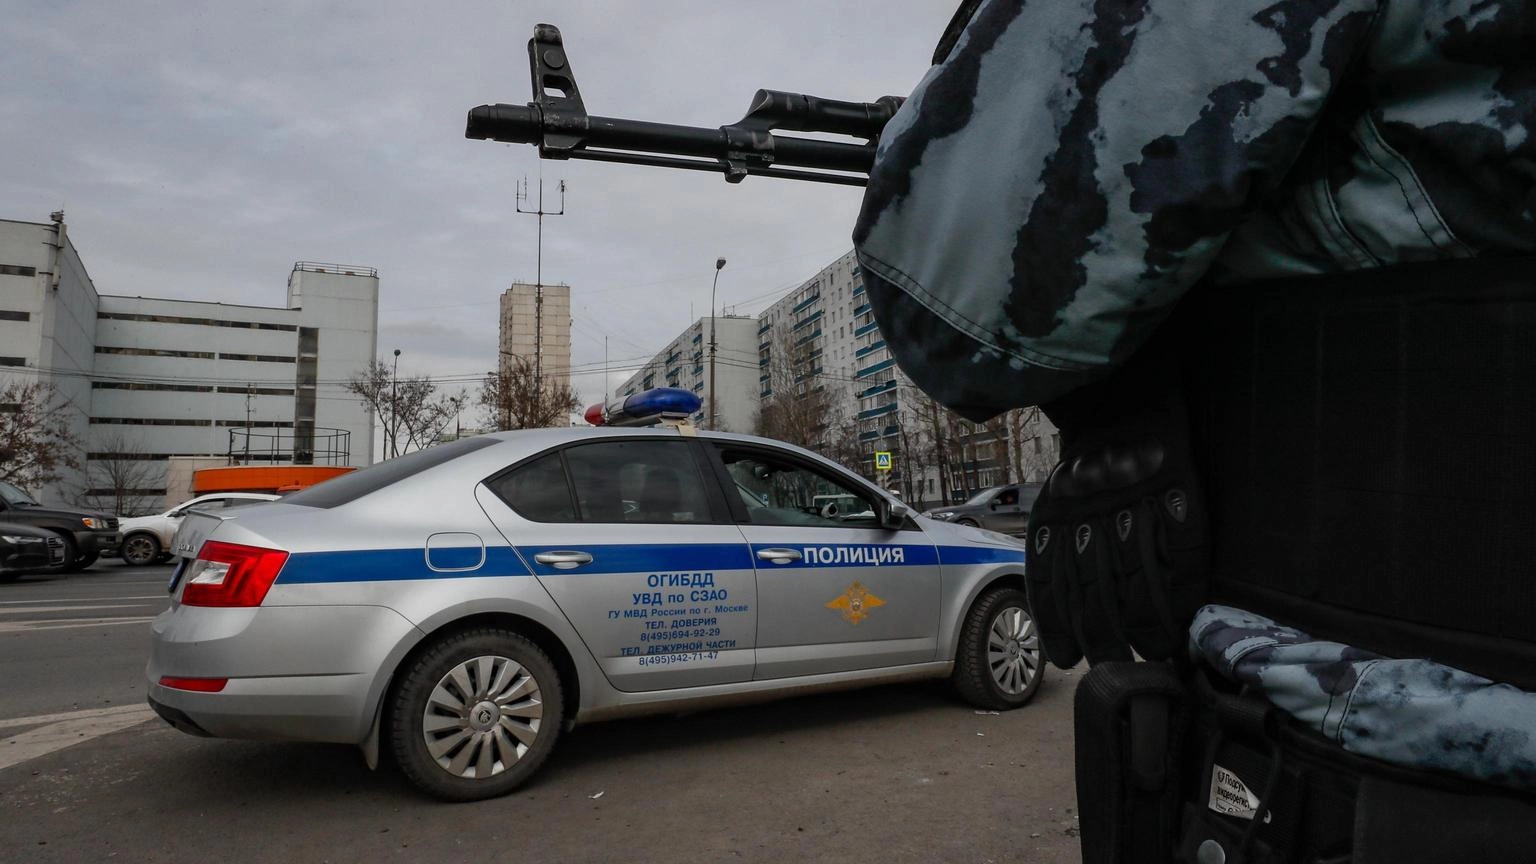 Ong, 'arrestati in Russia 5 giornalisti indipendenti'